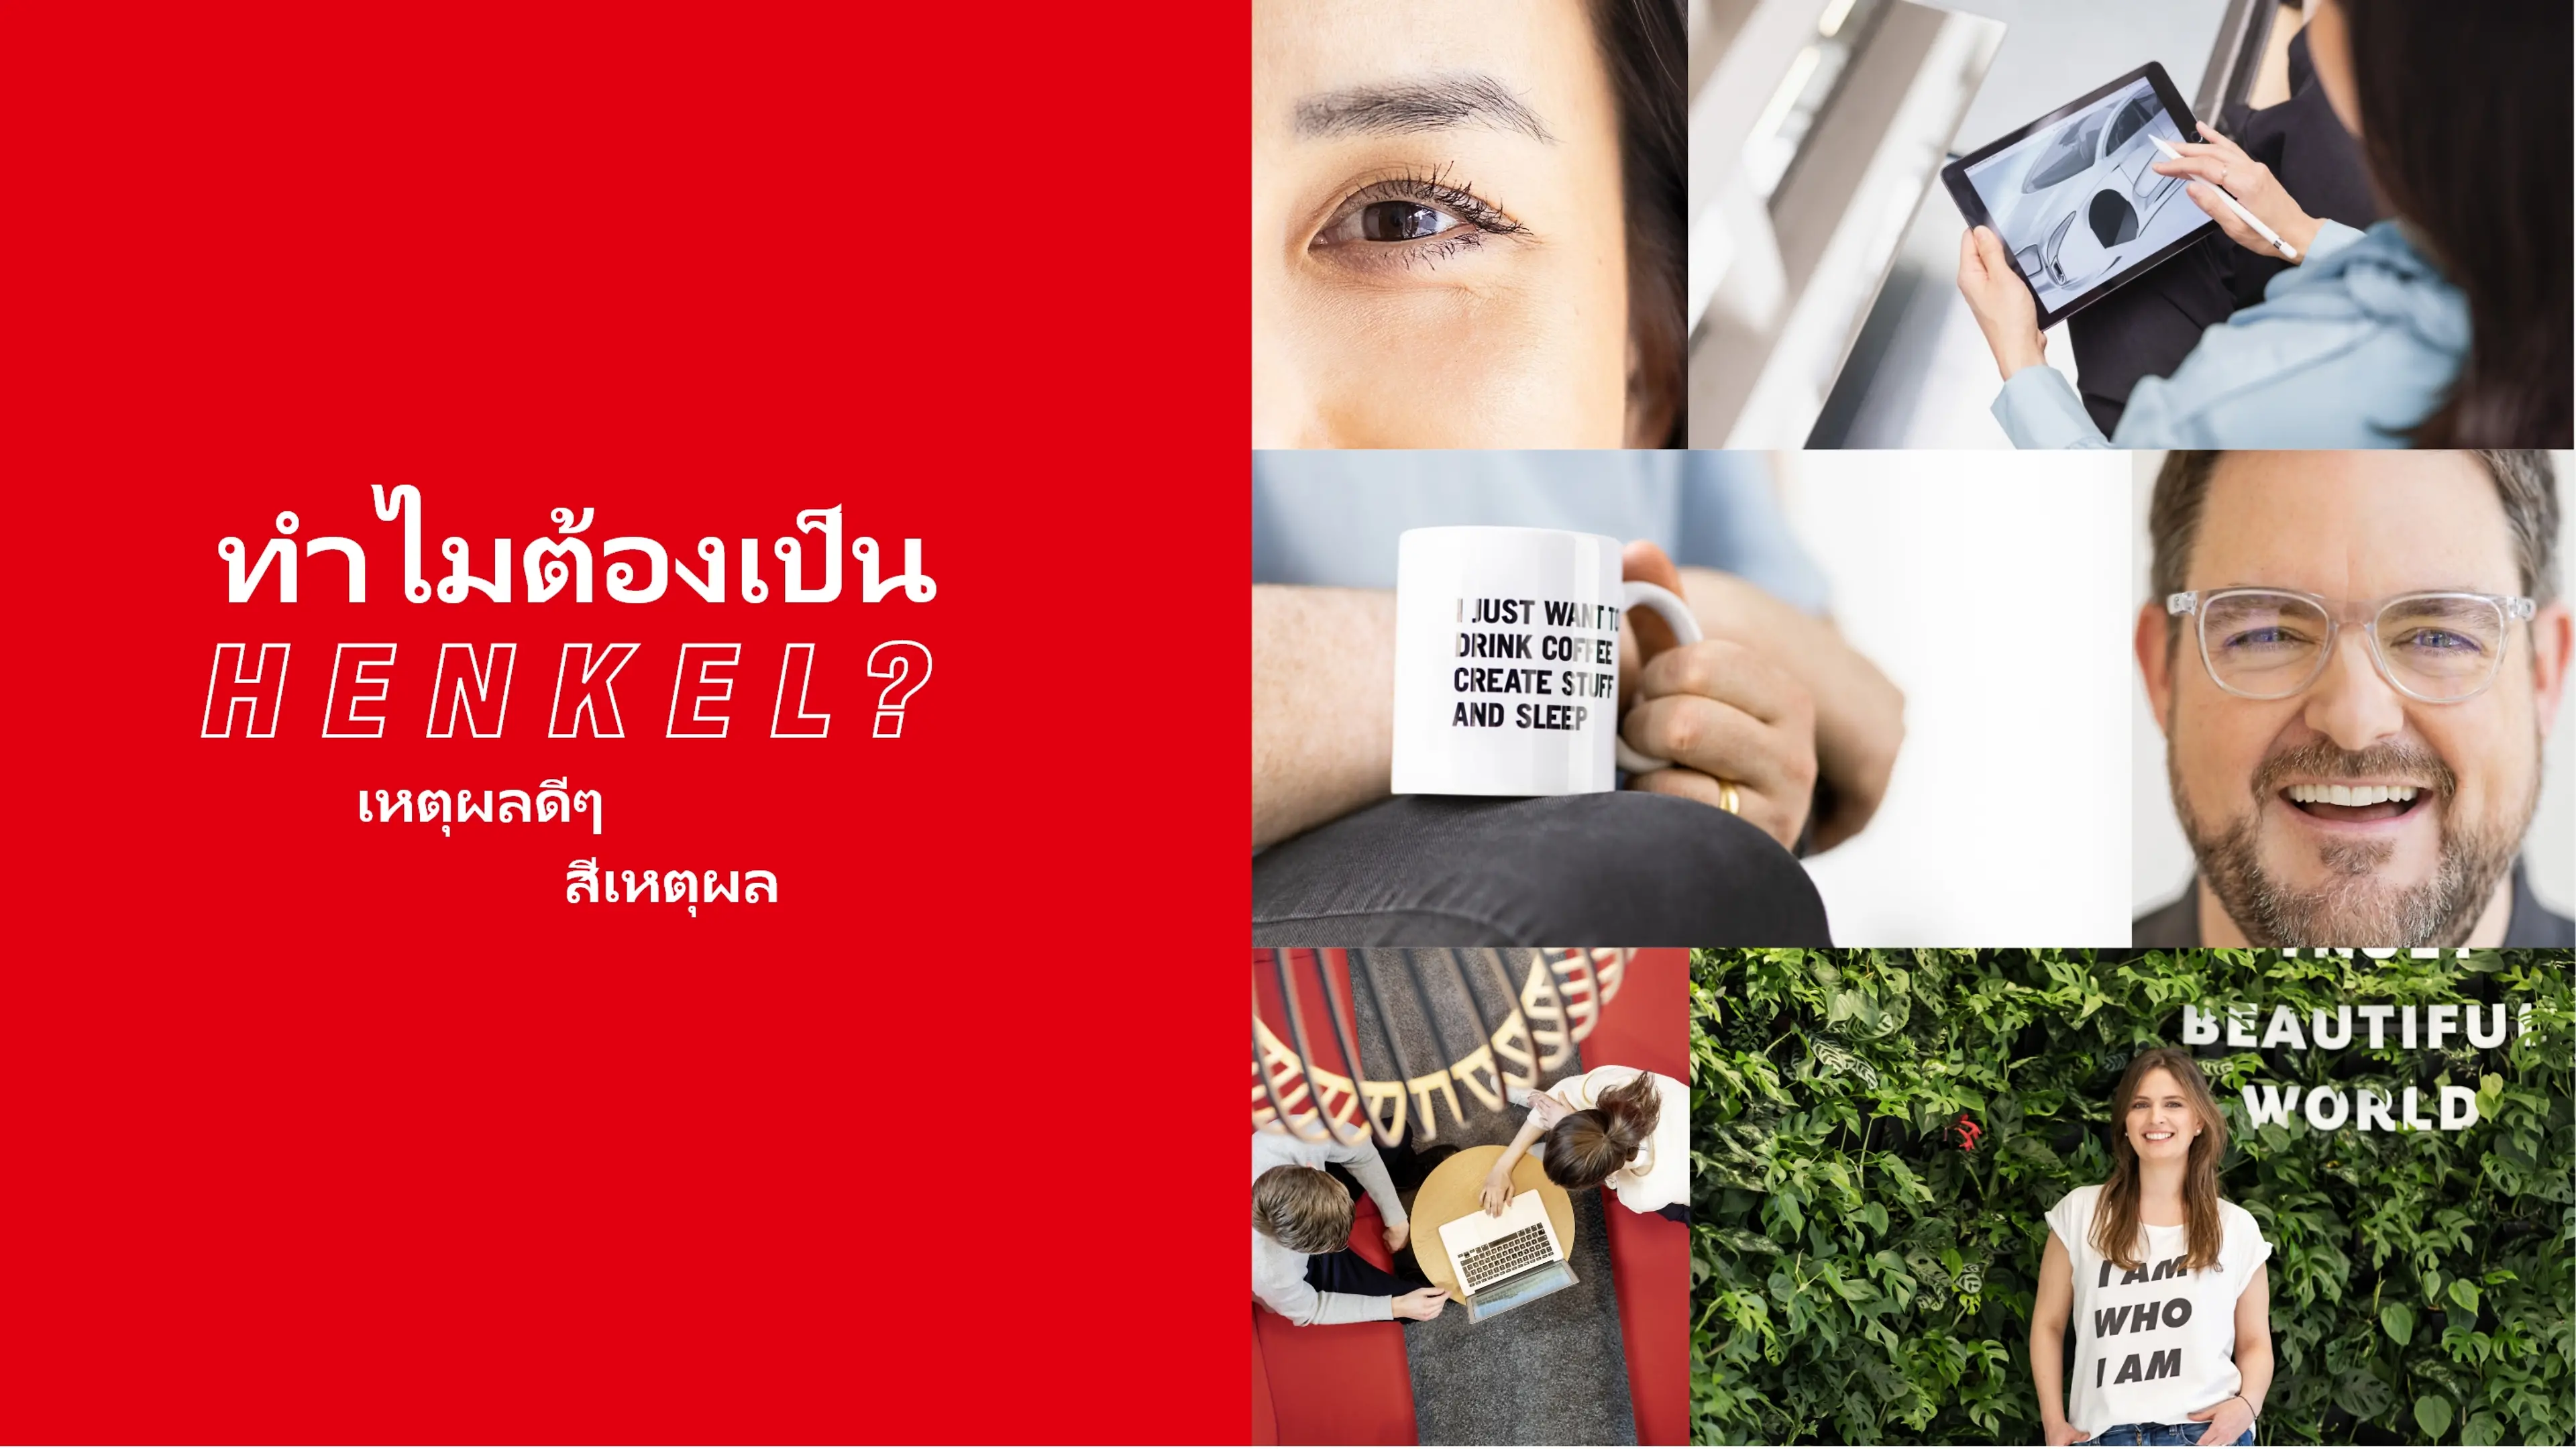 TH-why Henkel - header collage